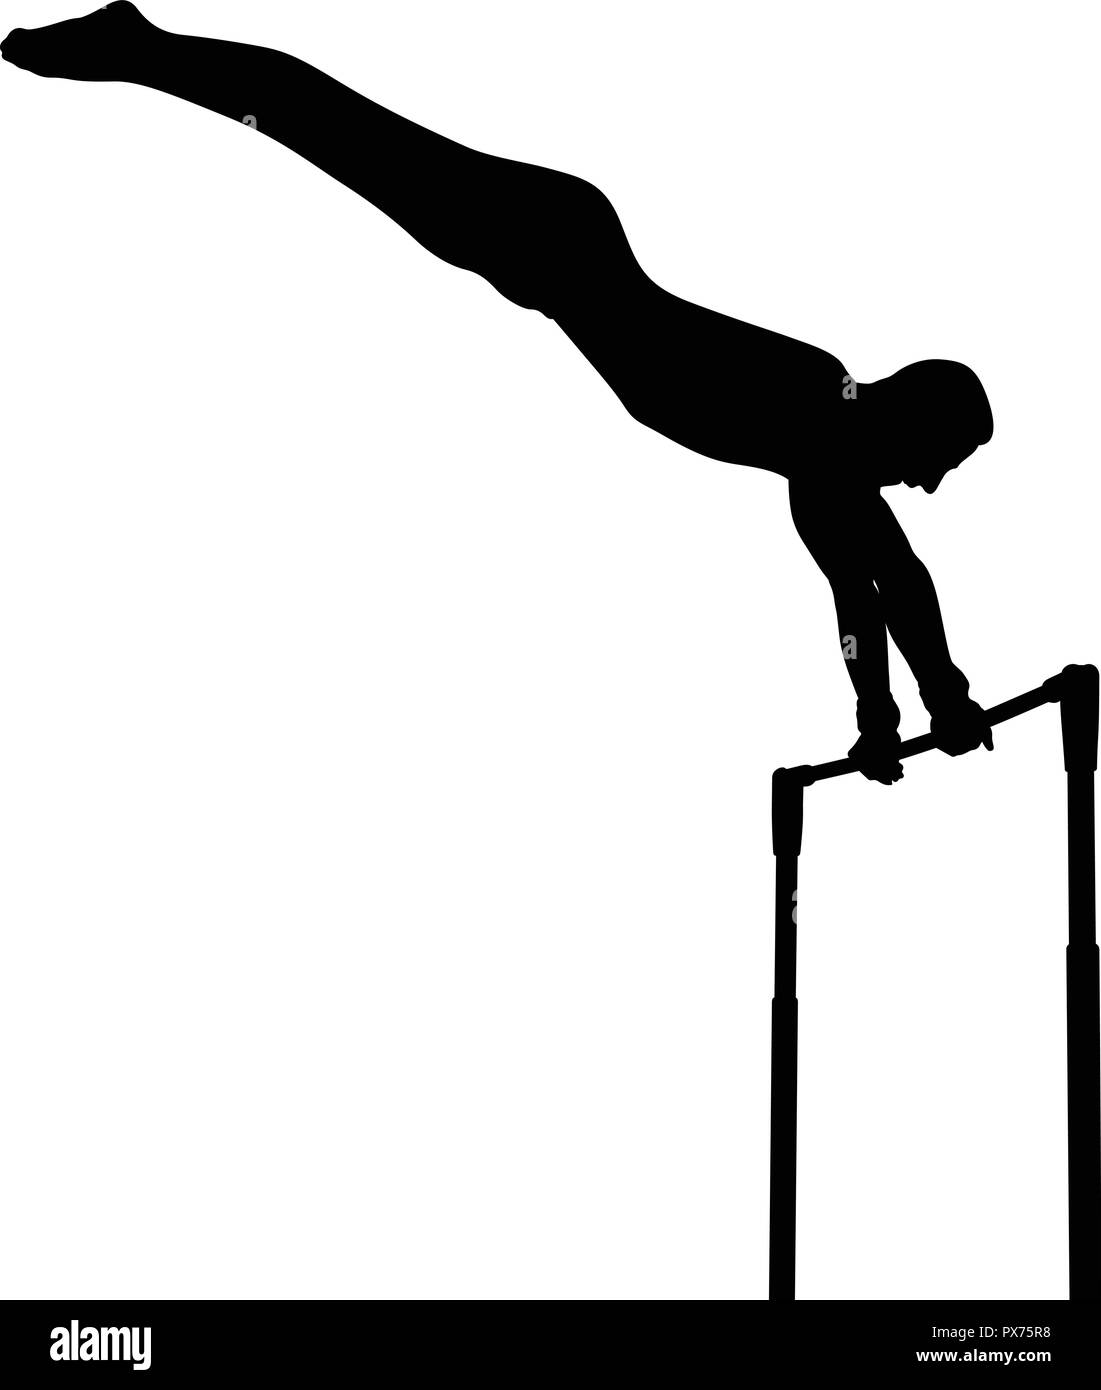 Barre horizontale en gymnastique artistique gymnastique silhouette noire Illustration de Vecteur